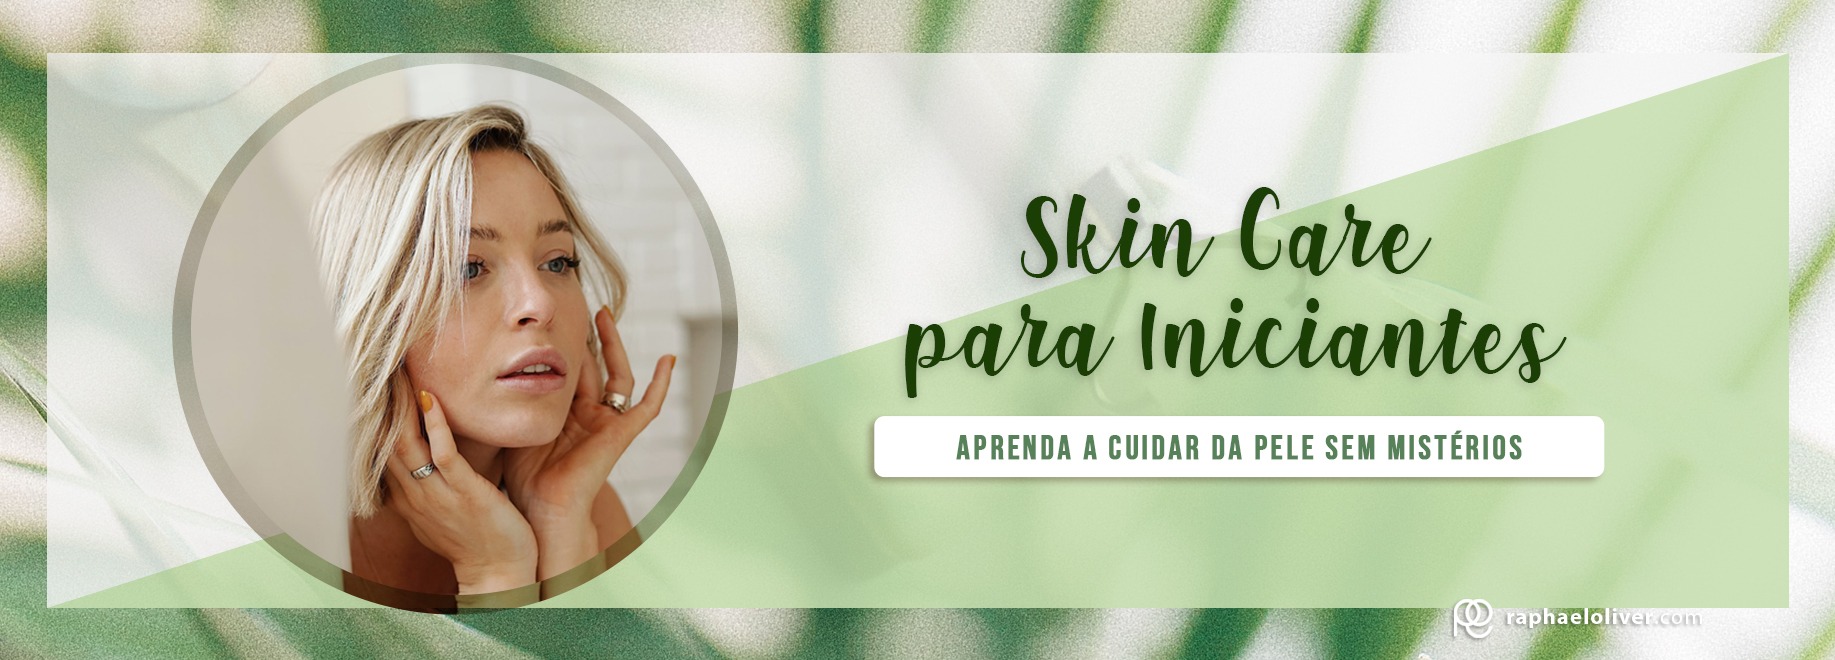 Skin Care Para Iniciantes: Aprenda a cuidar da pele sem mistérios